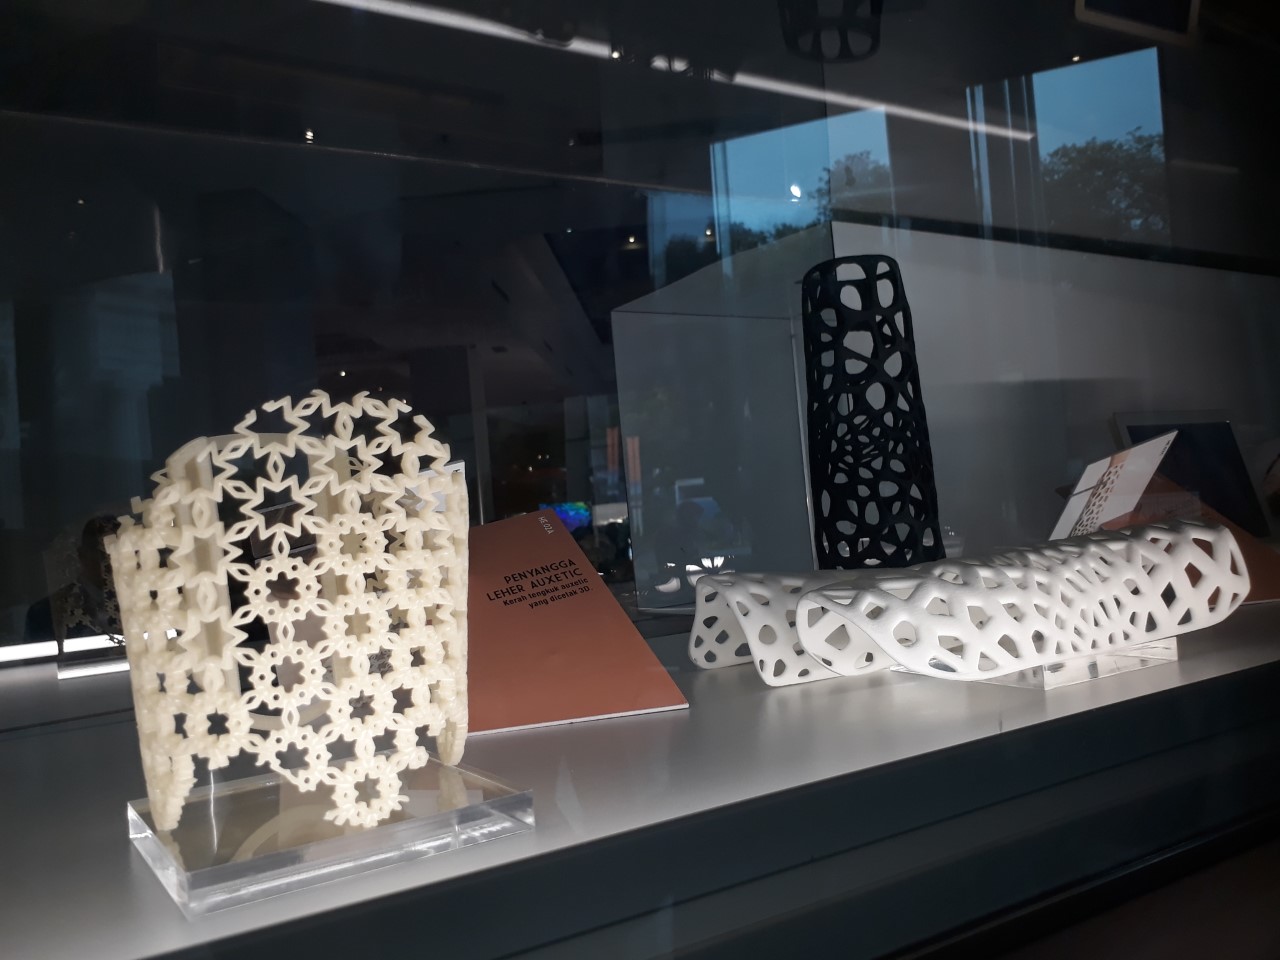 Penyangga leher yang dibuat dengan teknologi cetak 3D.